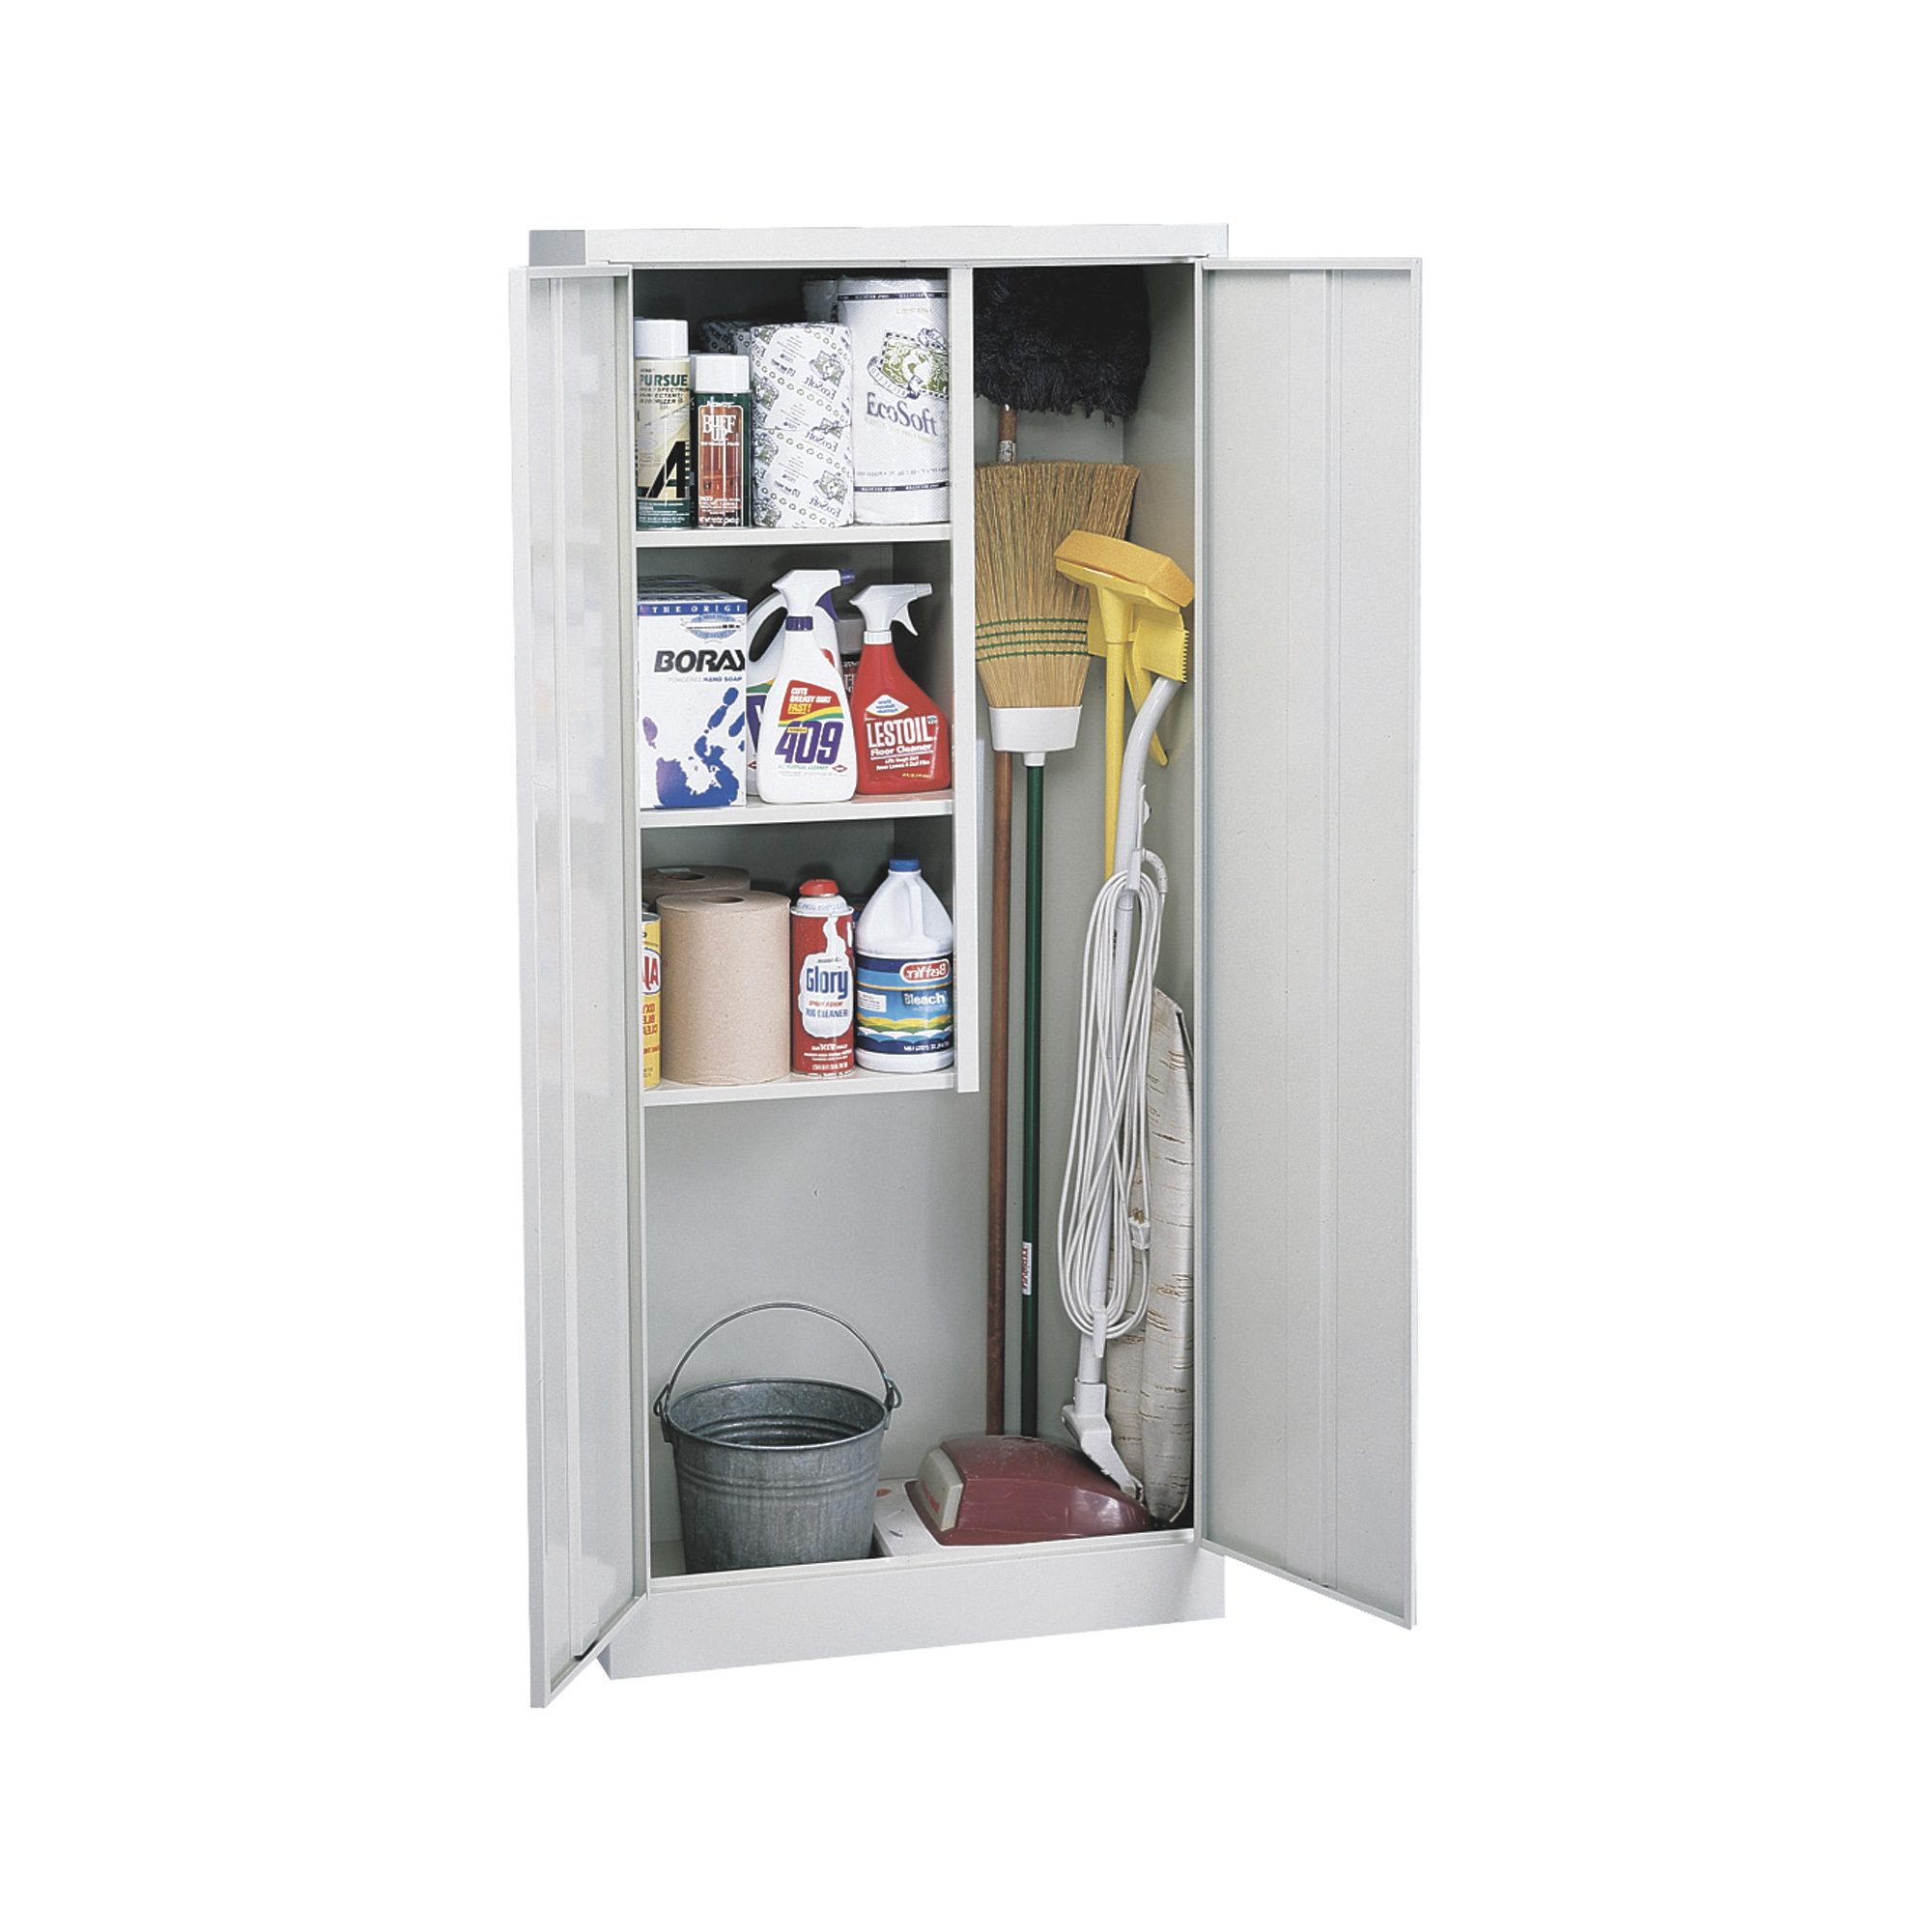 Welded Steel Janitorial Cabinet — 30Inch W x 15Inch D x 66Inch H, Light Gray, Model - Sandusky Lee VFC1301566-05